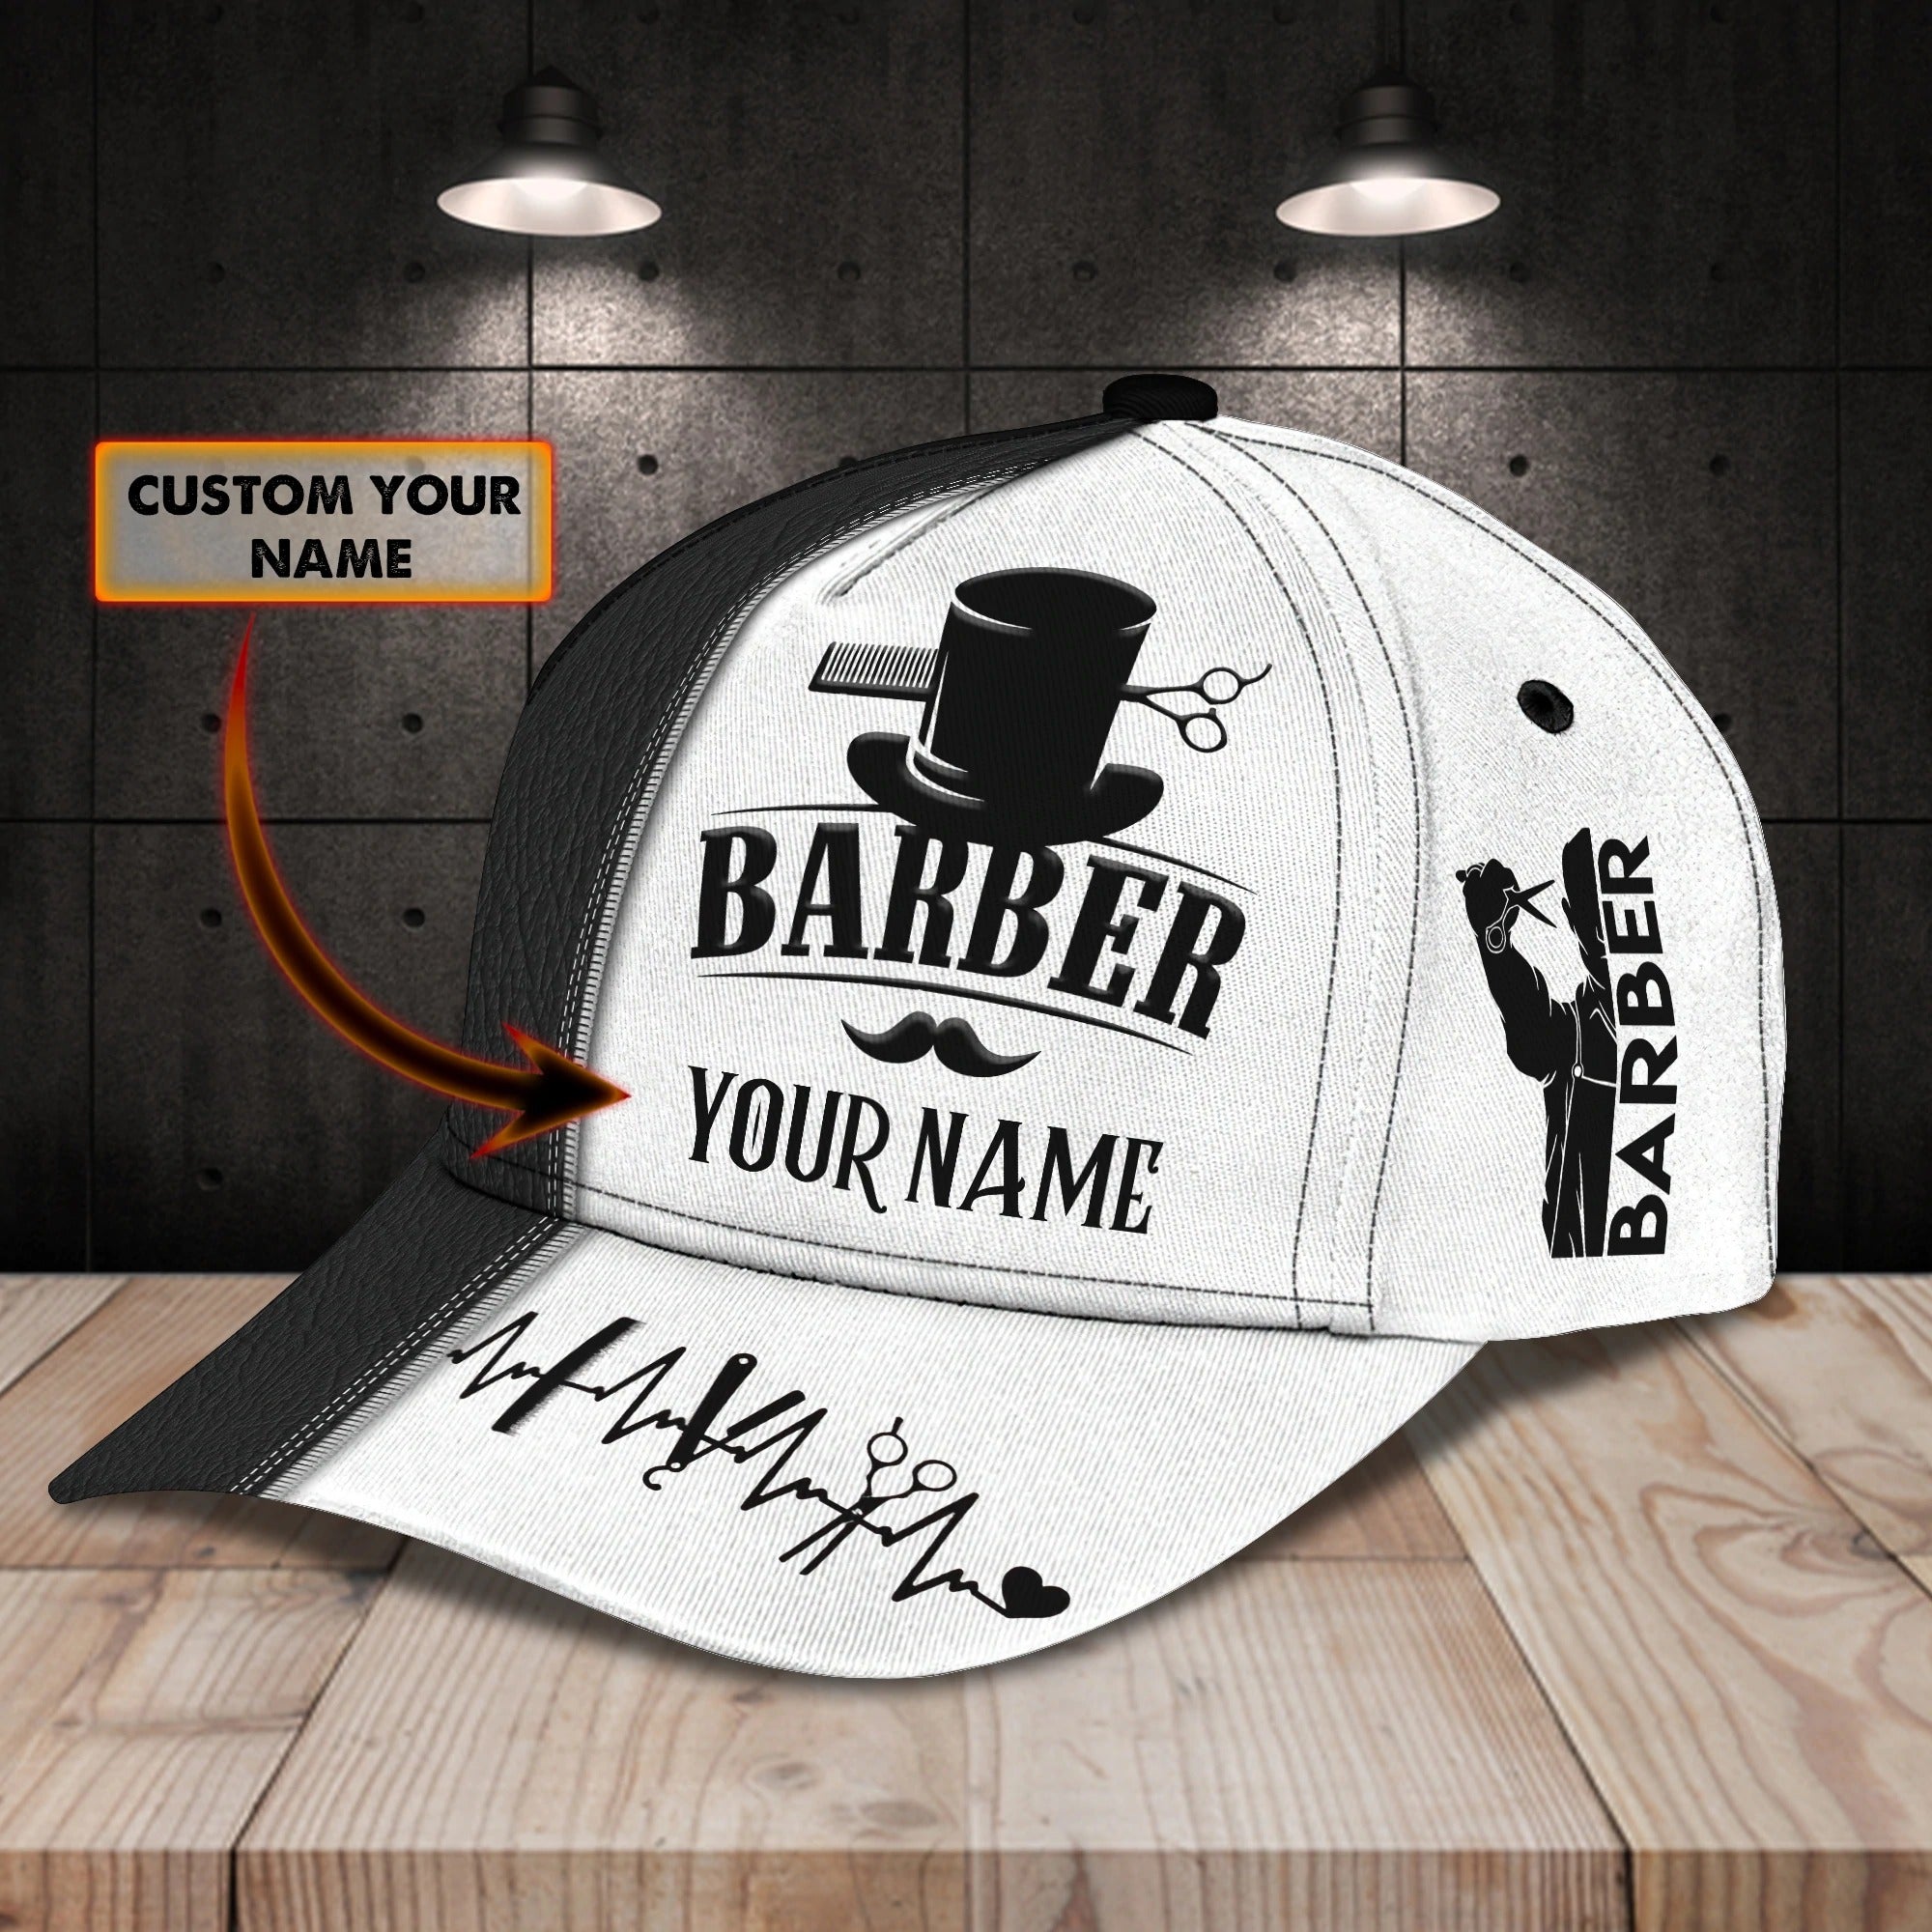 Custom Name Barber Baseball Cap Hat For Men/ Woman Barber Caps/ Birthday Gift For Barber Friend